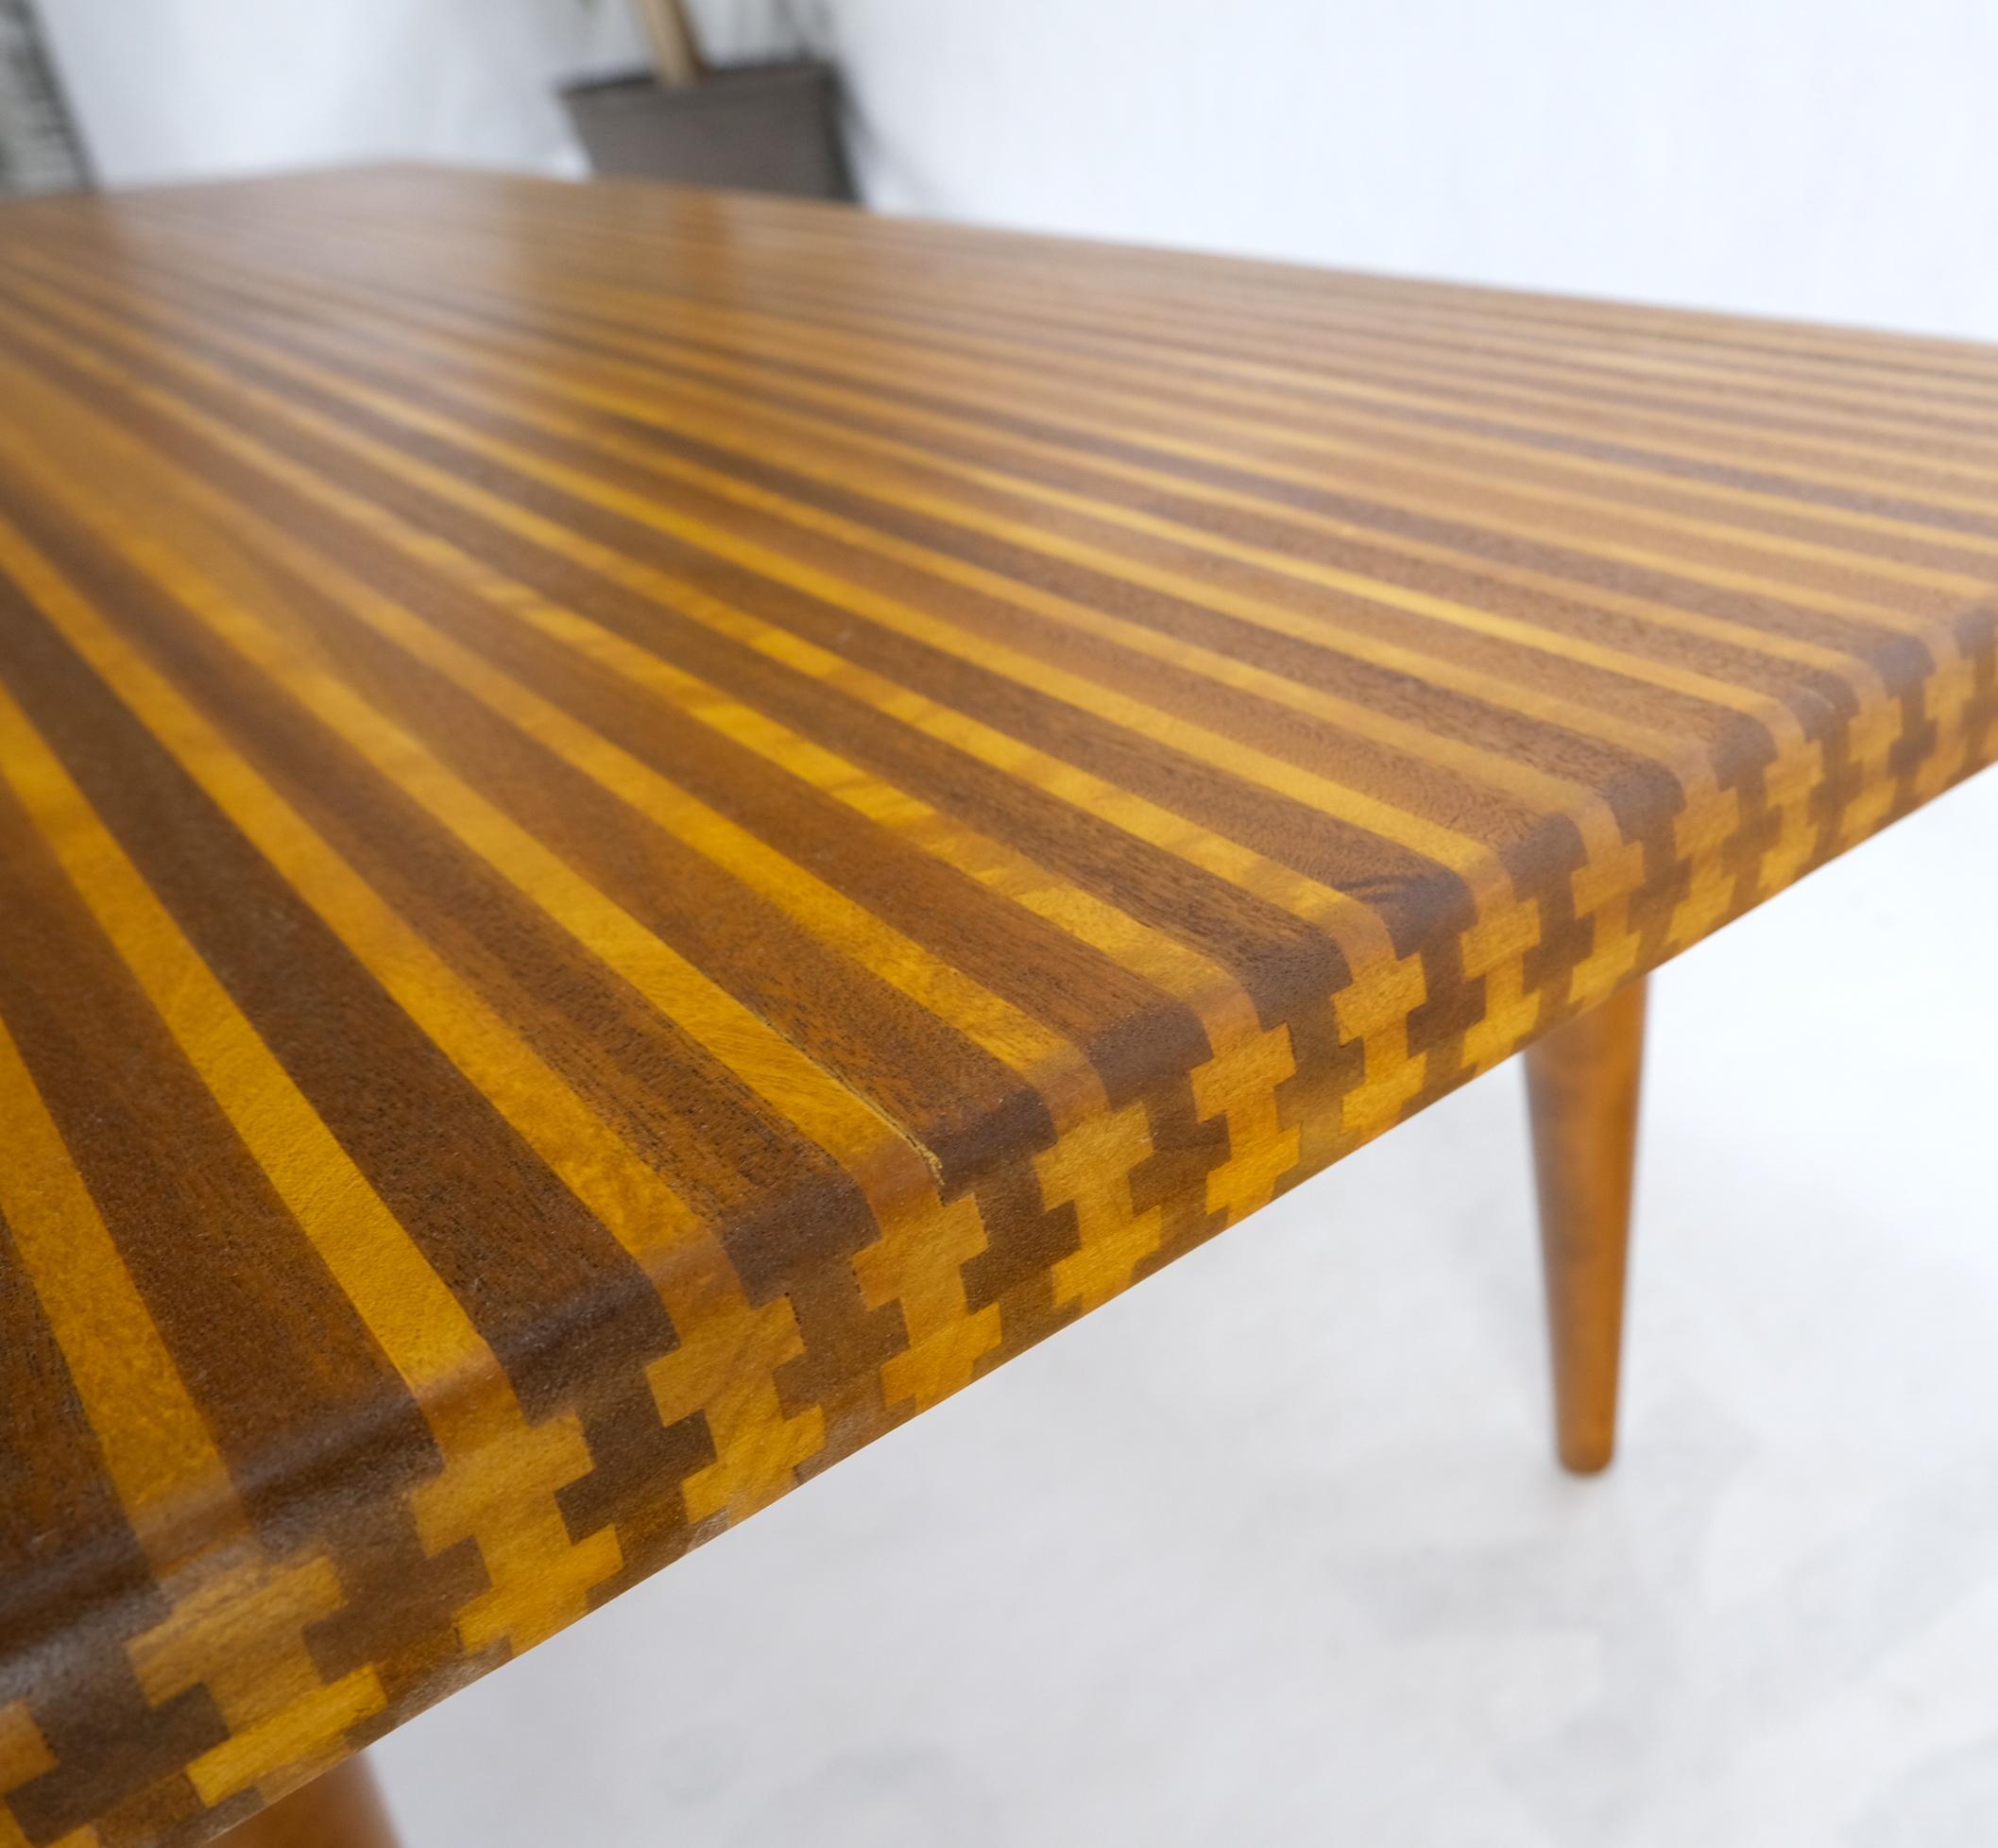 Solid teak & walnut Block Swedish coffee table on tapered dowel legs mint.
Beautiful two tone 